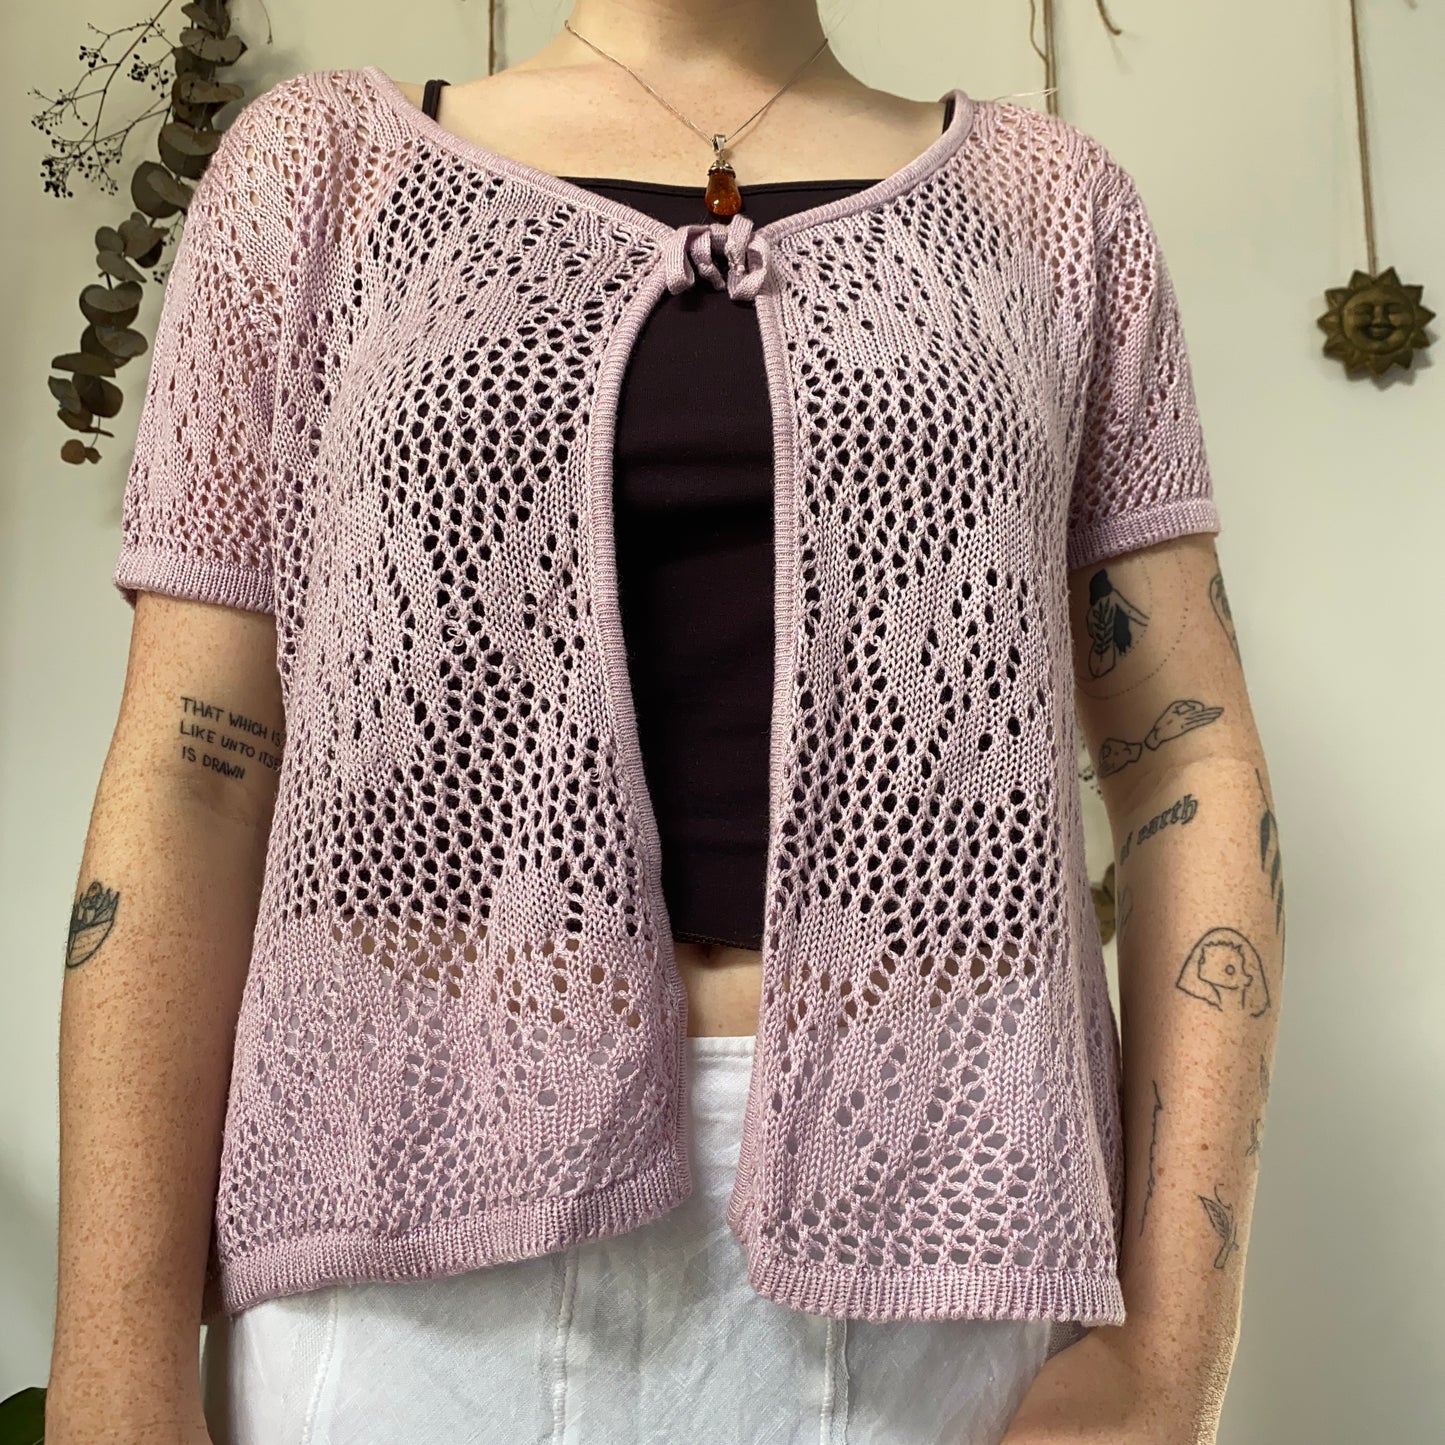 Lilac knit top - size L/XL